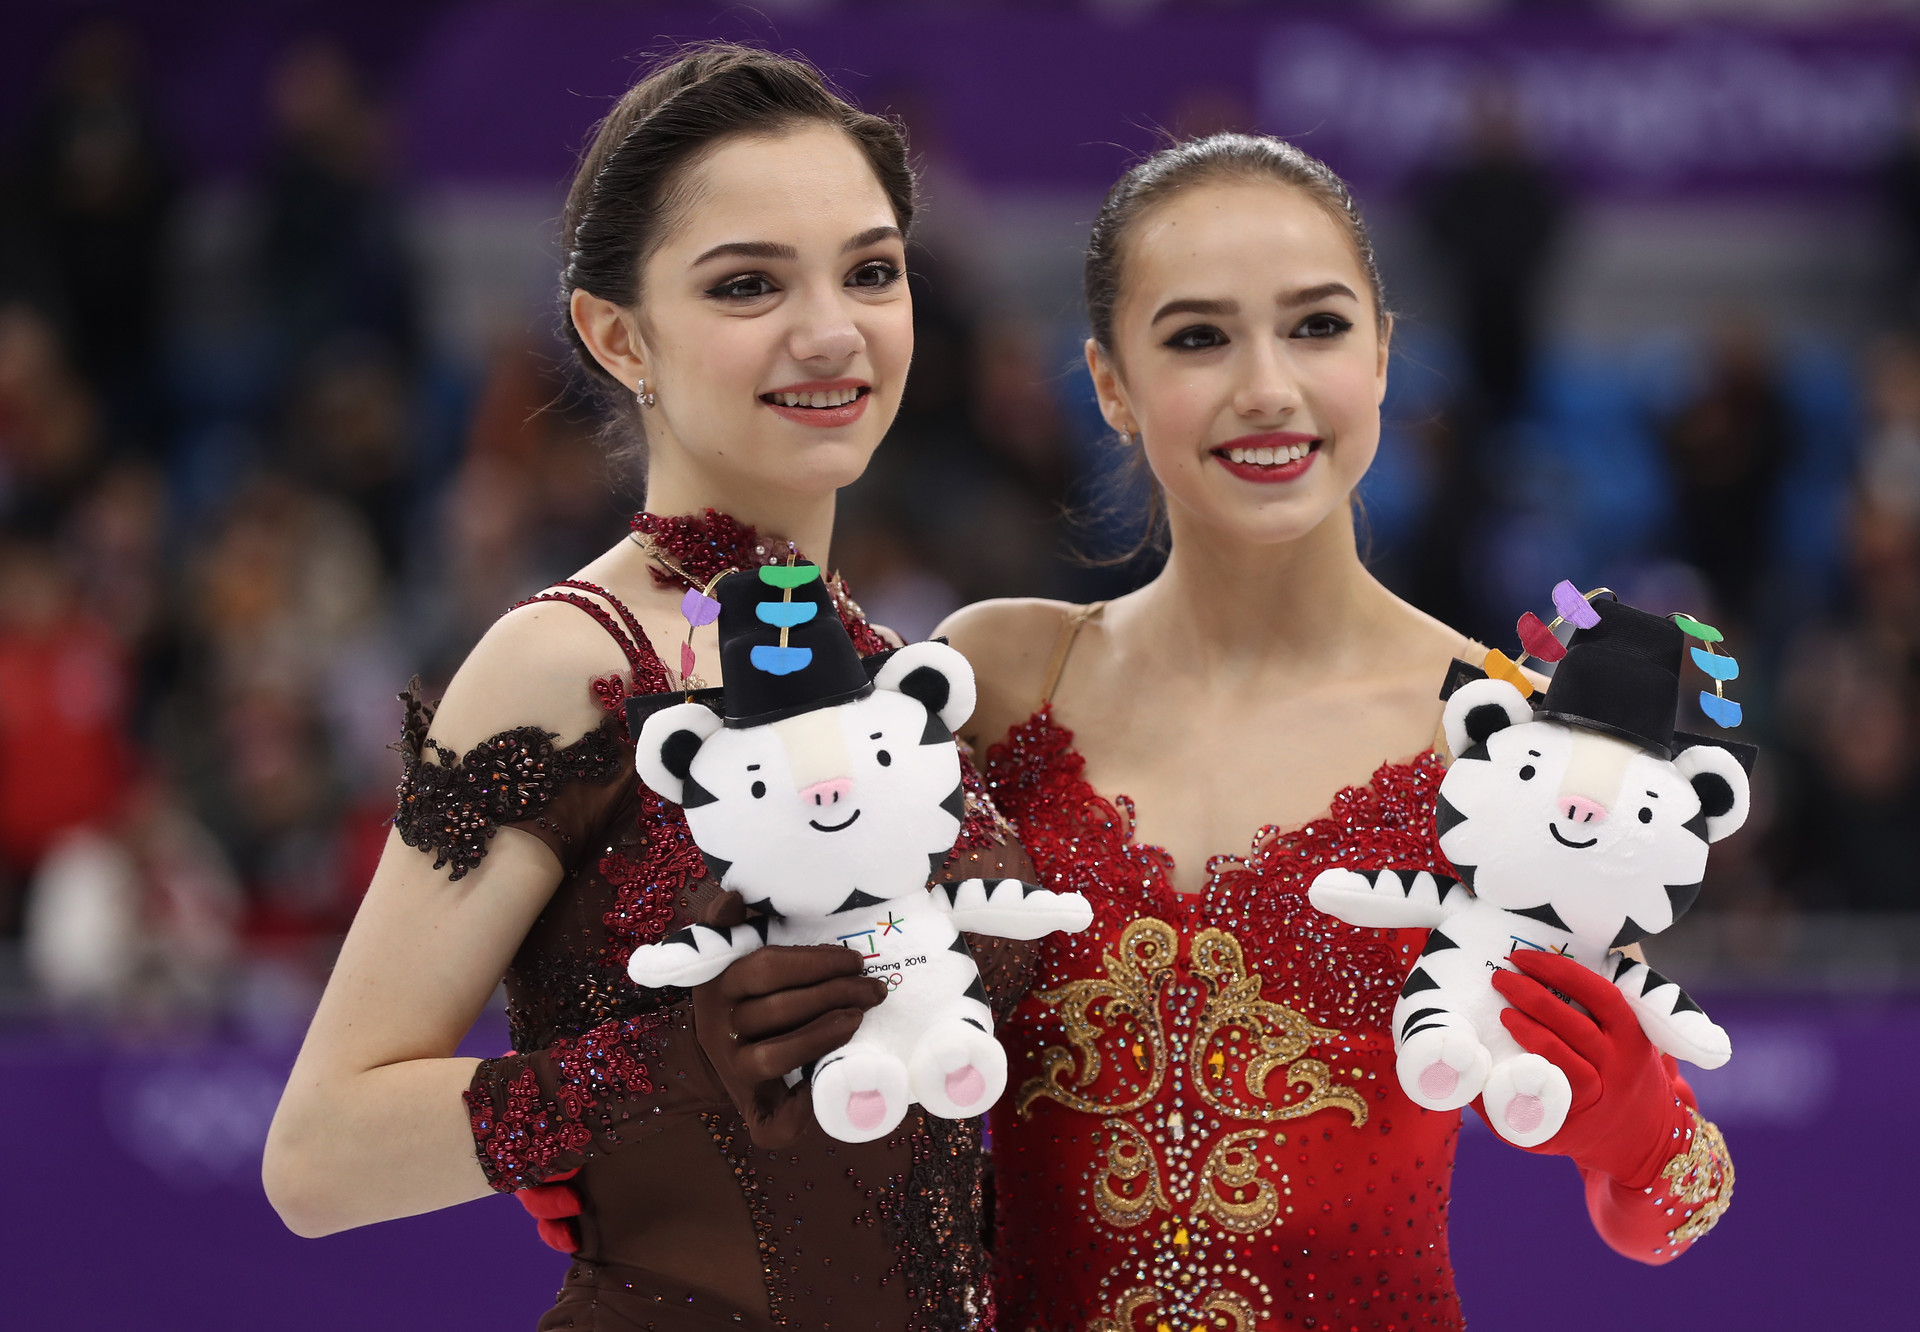 Руске клизачице Јевгенија Медведева и Алина Загитова на Зимској олимпијади 2018 у Пјонгчангу